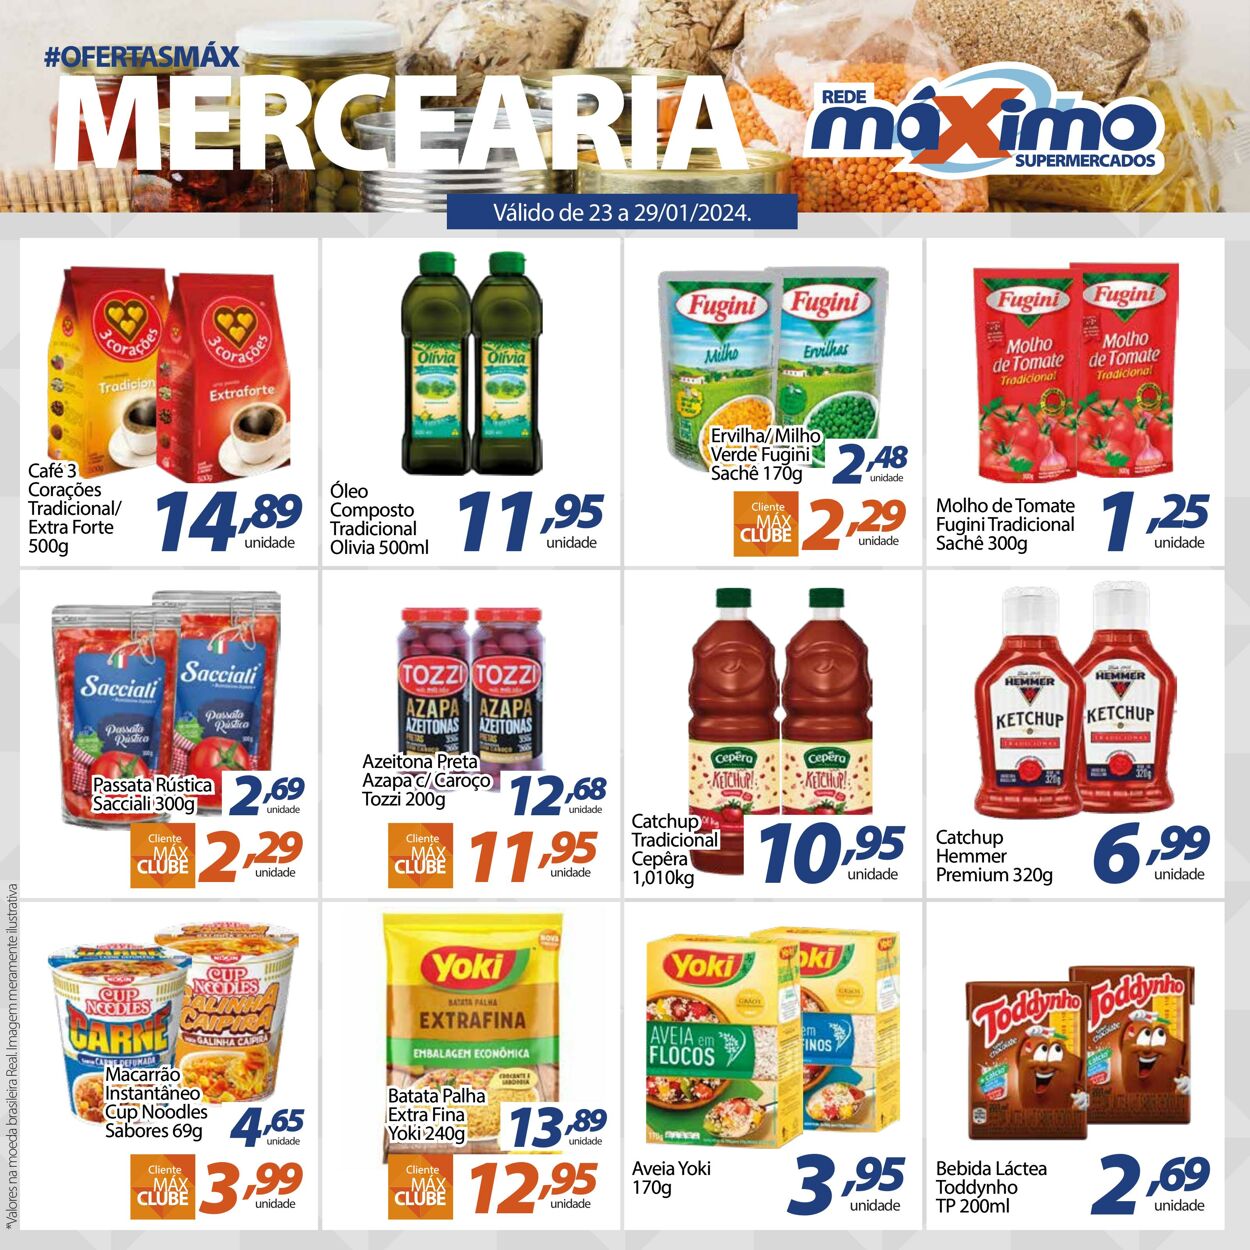 Folheto Supermercado Máximo 23.01.2024 - 29.01.2024